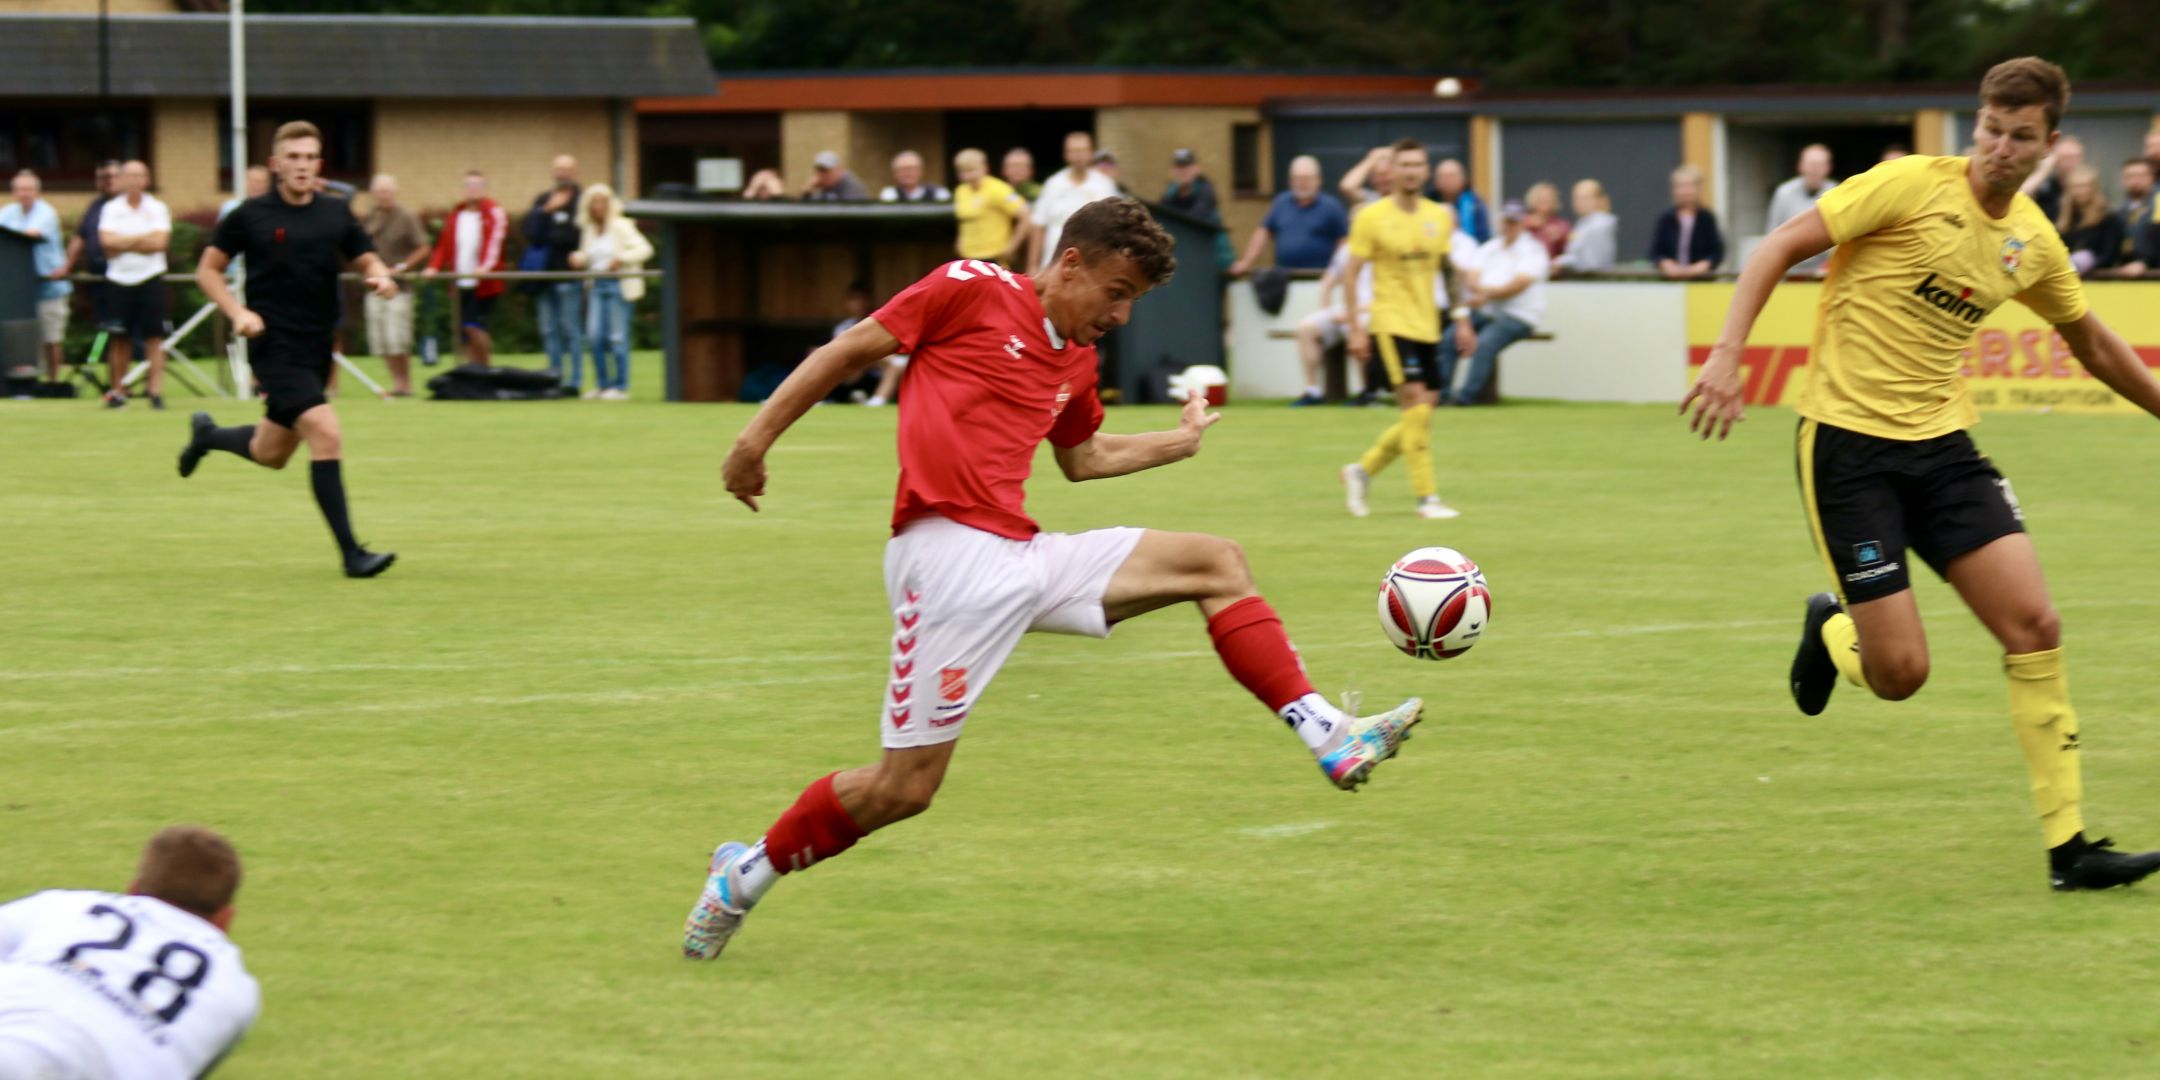 Gelungener Saisonauftakt - SV Eichede gewinnt mit 1:0 beim SV Frisia 03